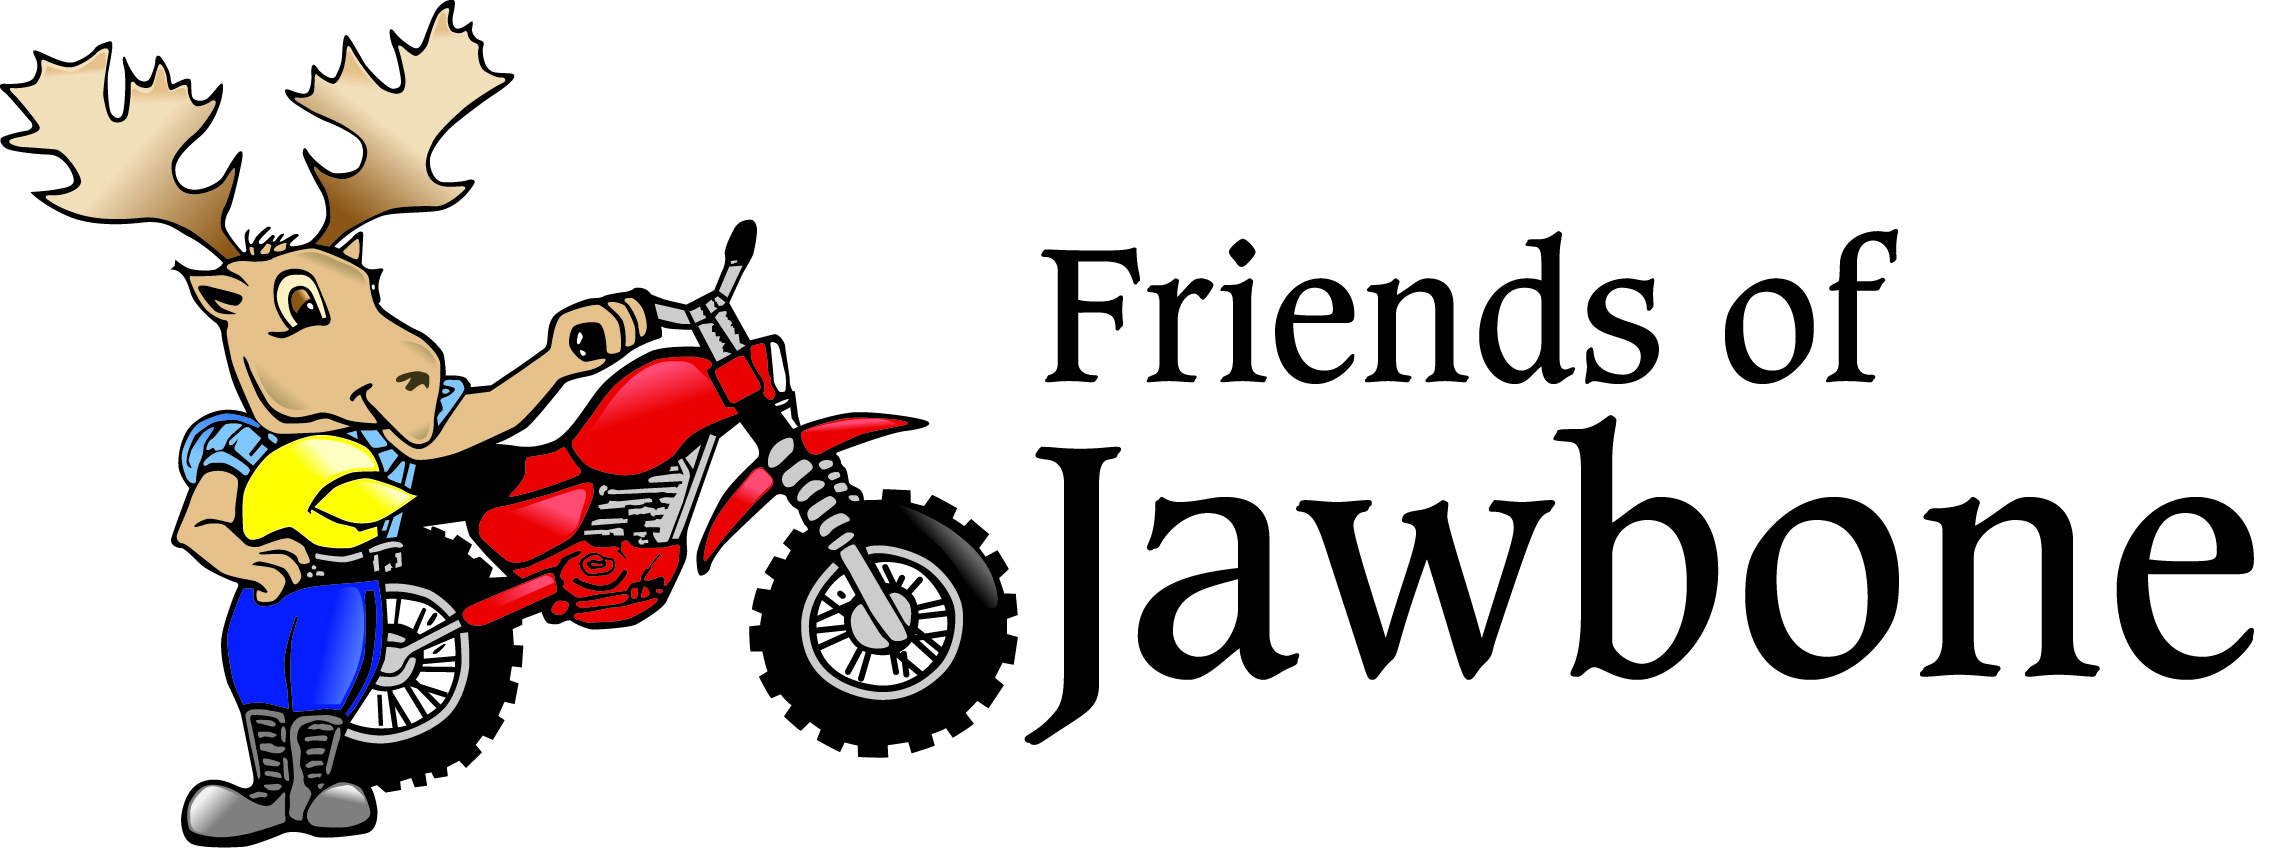 Friends of Jawbone logo